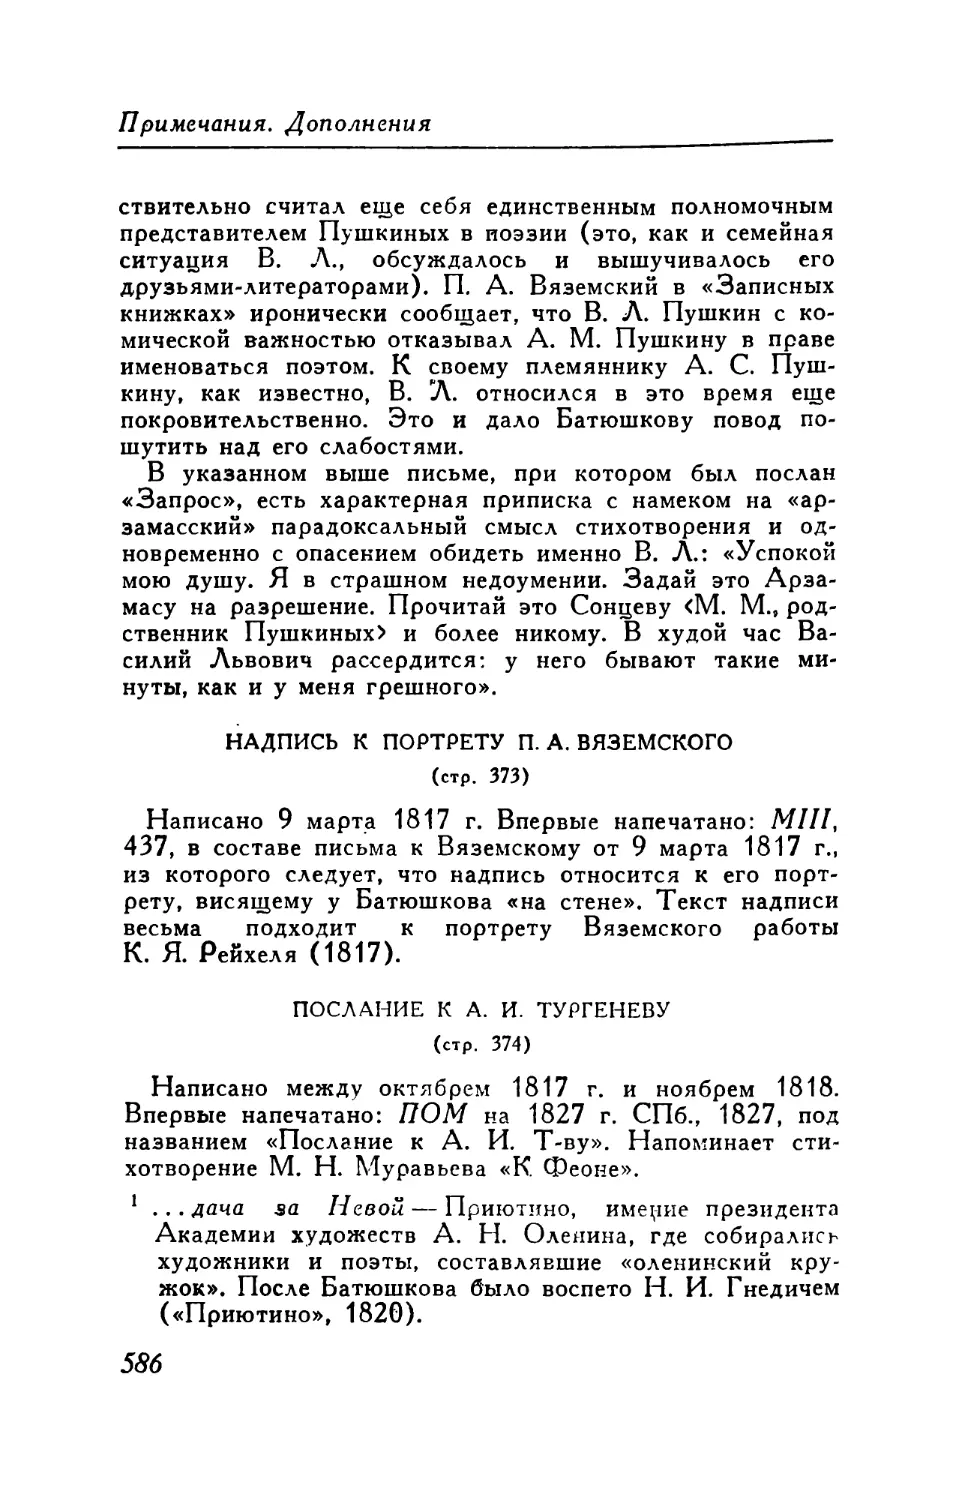 Надпись к портрету П. А. Вяземского
Послание к А. И. Тургеневу